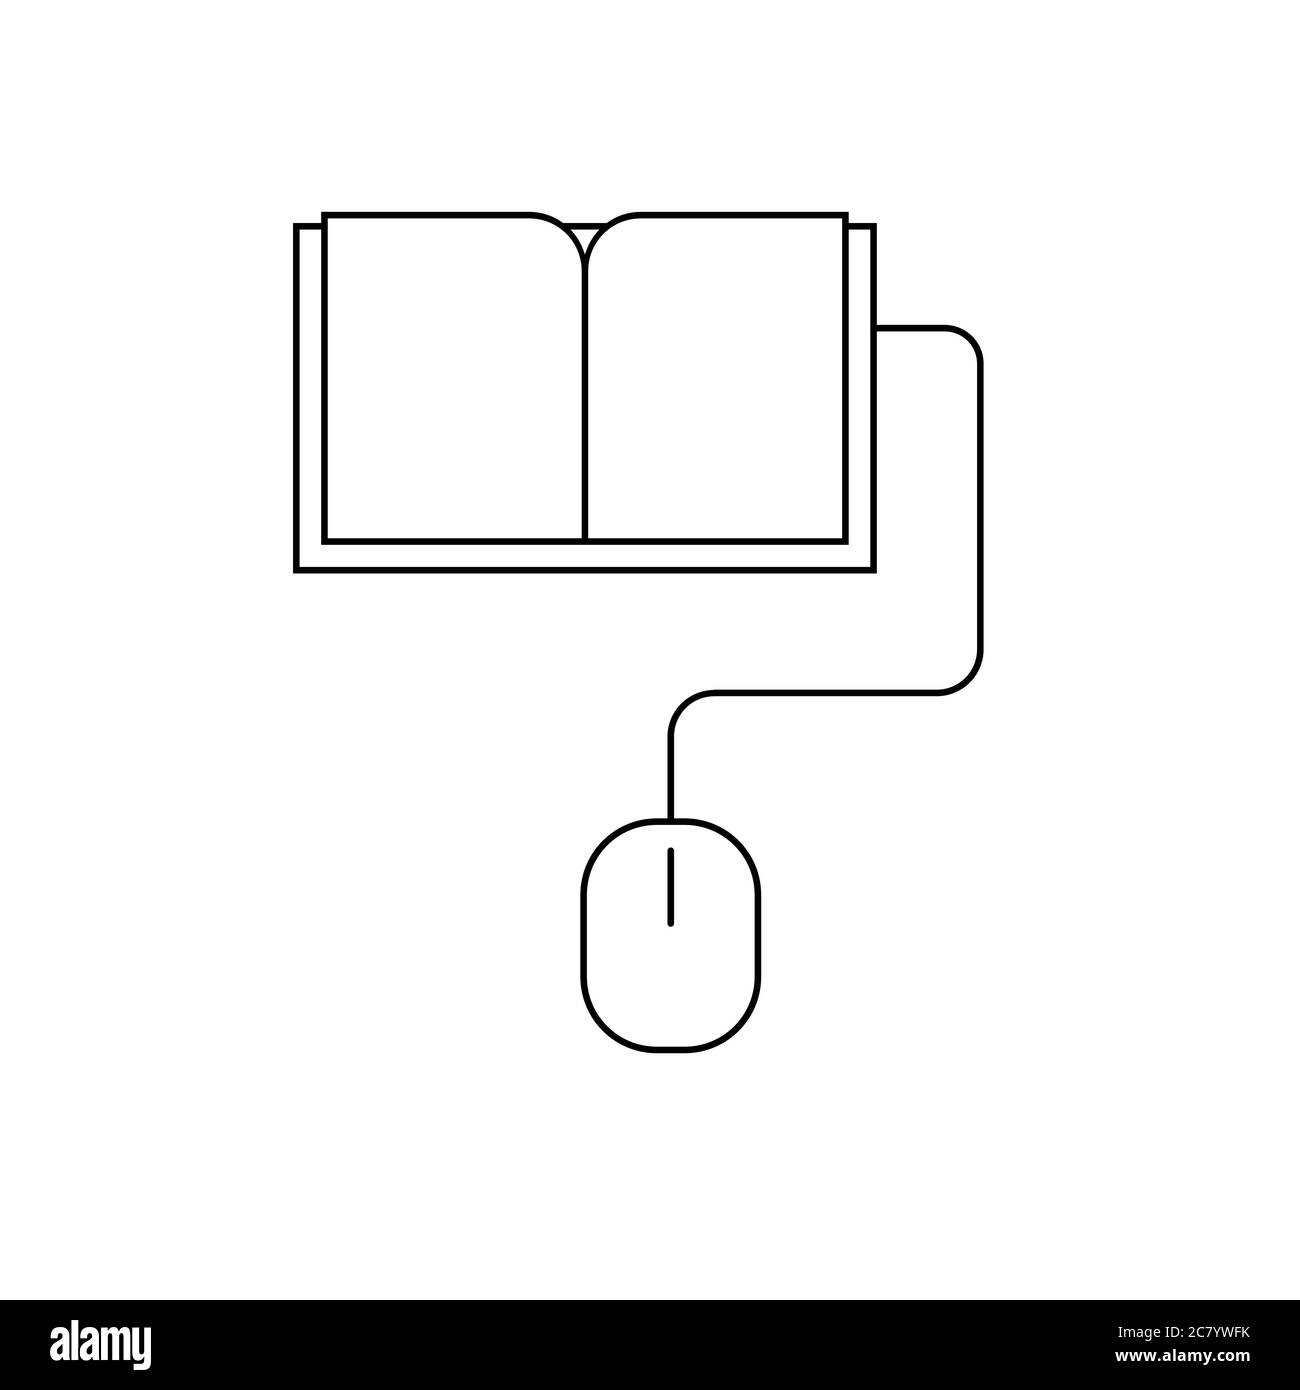 Un libro collegato a un'icona della linea del mouse del computer. Simbolo e-book. Lettura e apprendimento. Formazione online, apprendimento a distanza, homeschooling. Illustrazione Vettoriale